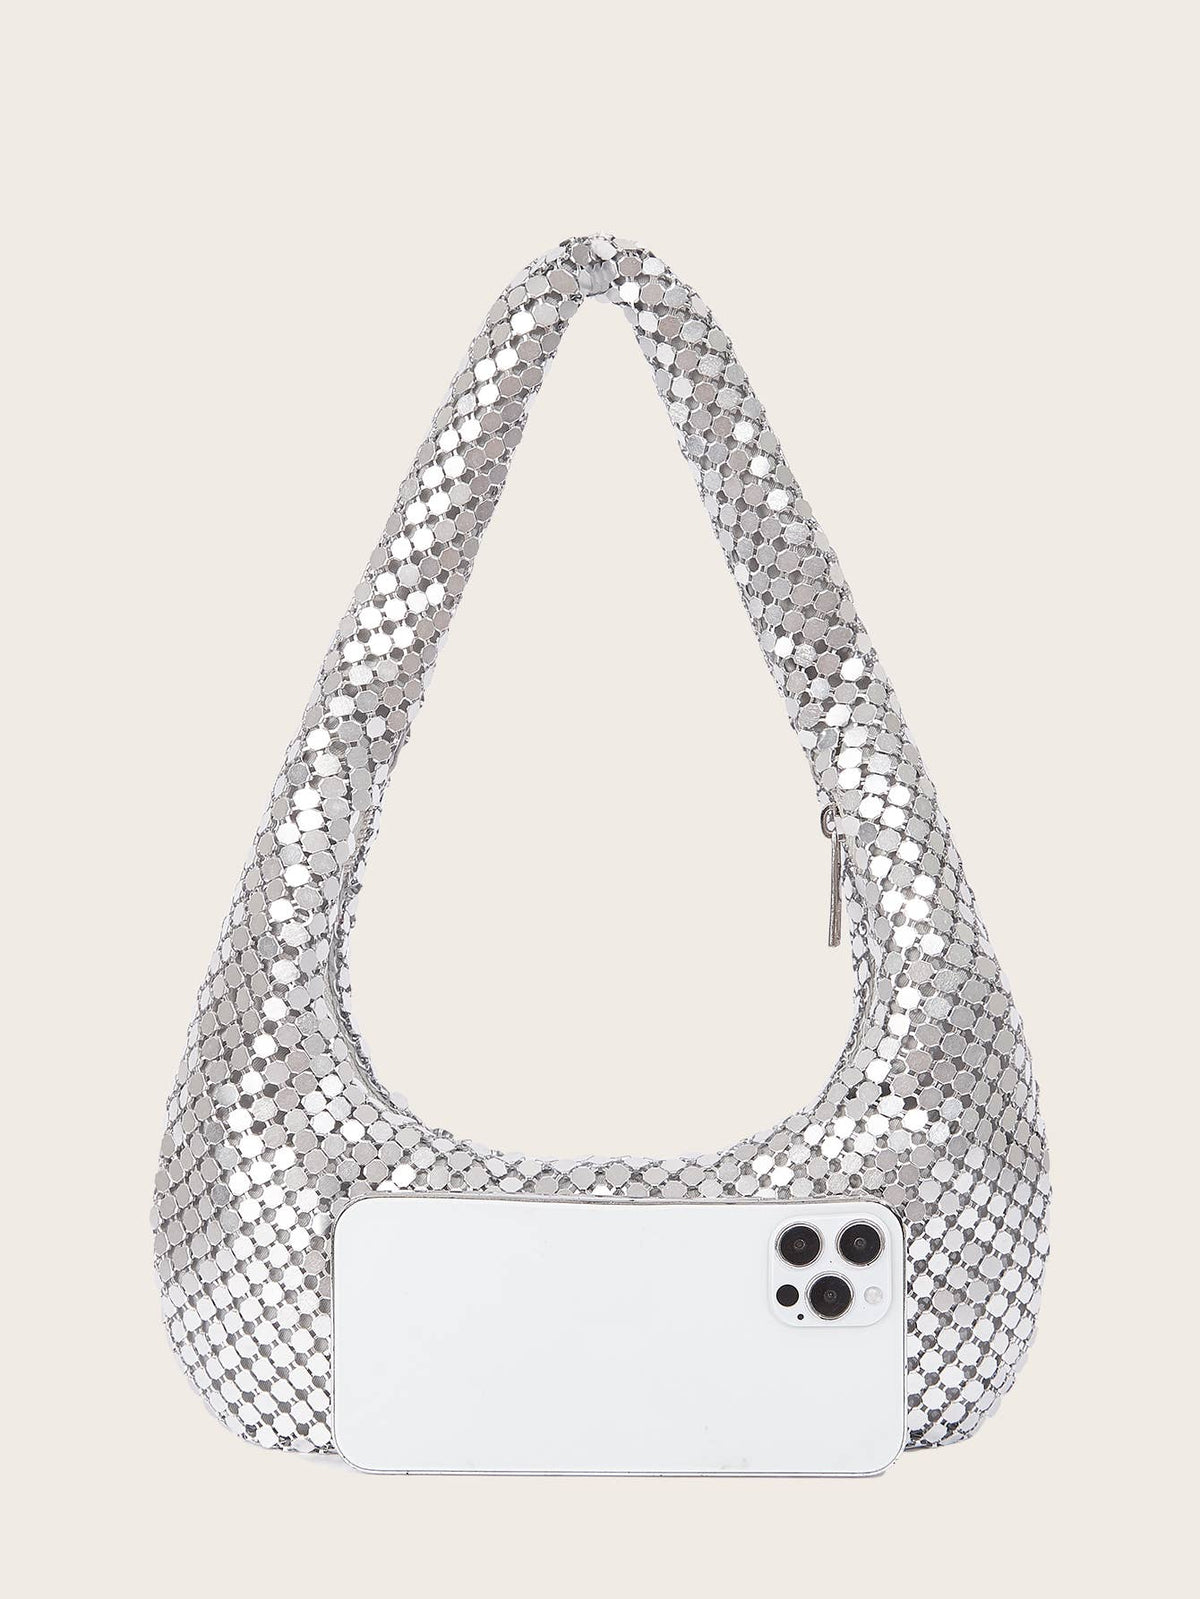 PEACH ACCESSORIES - 10163 Super soft mesh handbag: Silver